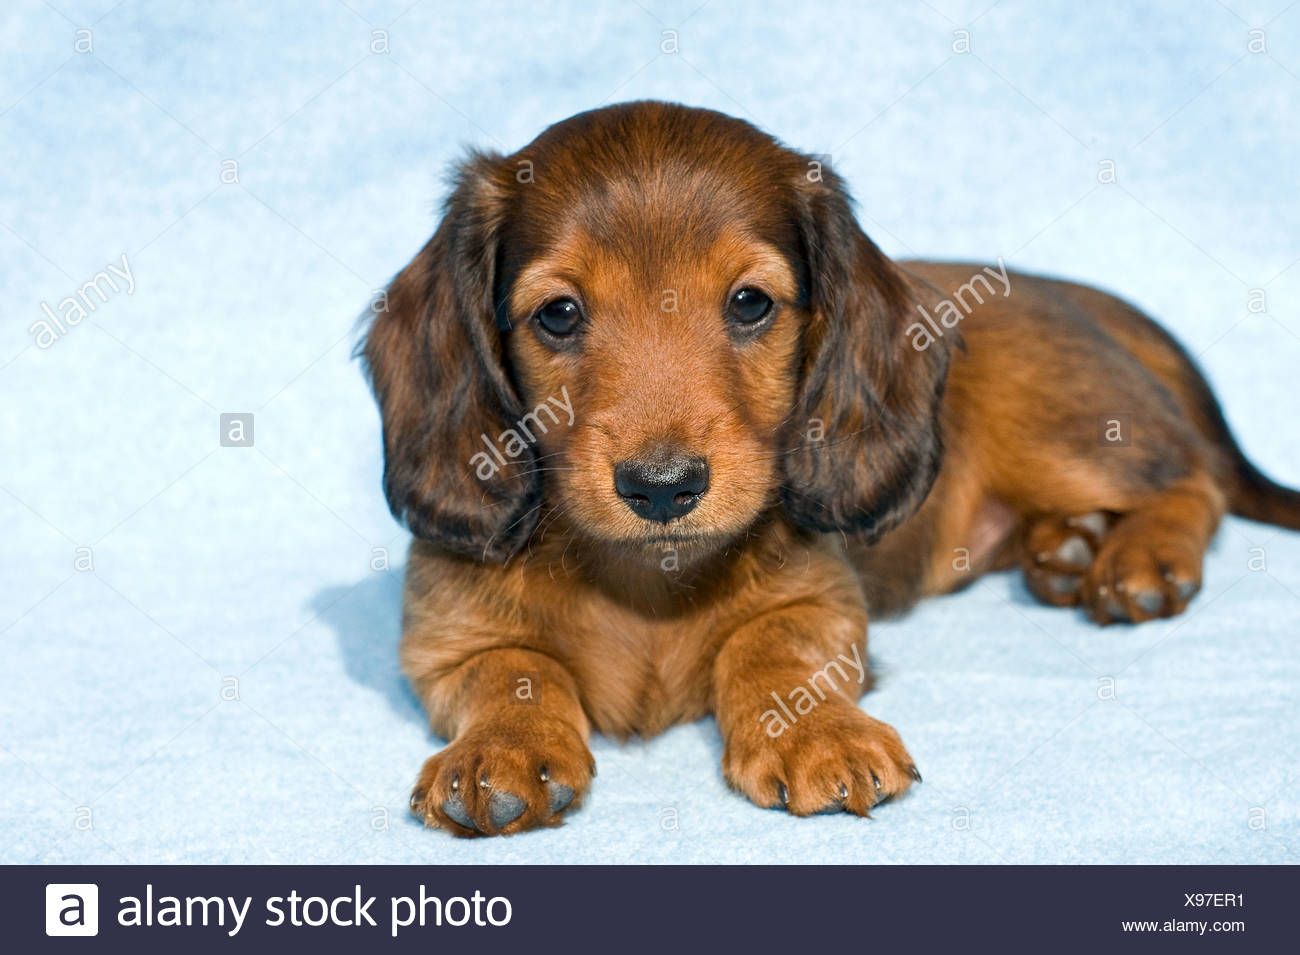 wiener dog puppy